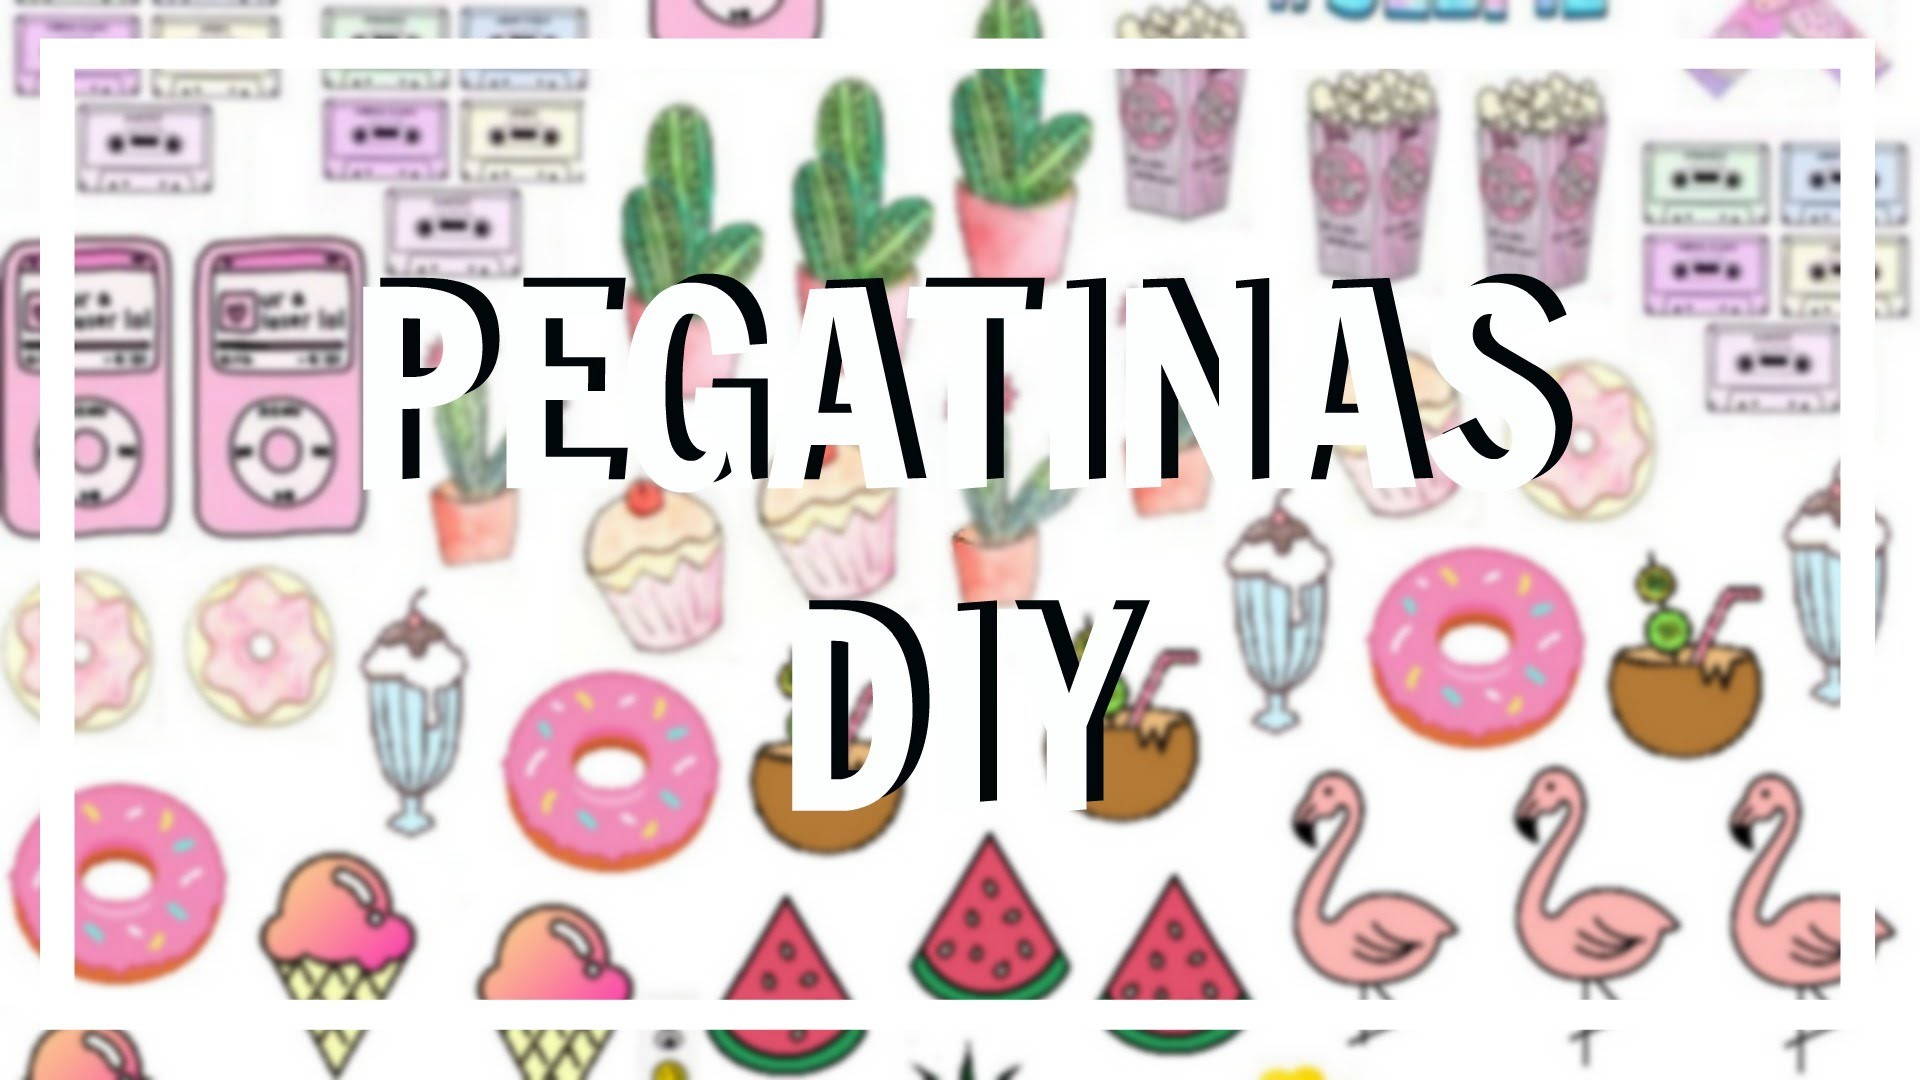 PEGATINAS. STICKERS DIY (FREE PRINTABLE) | Chicasinsentido DIY